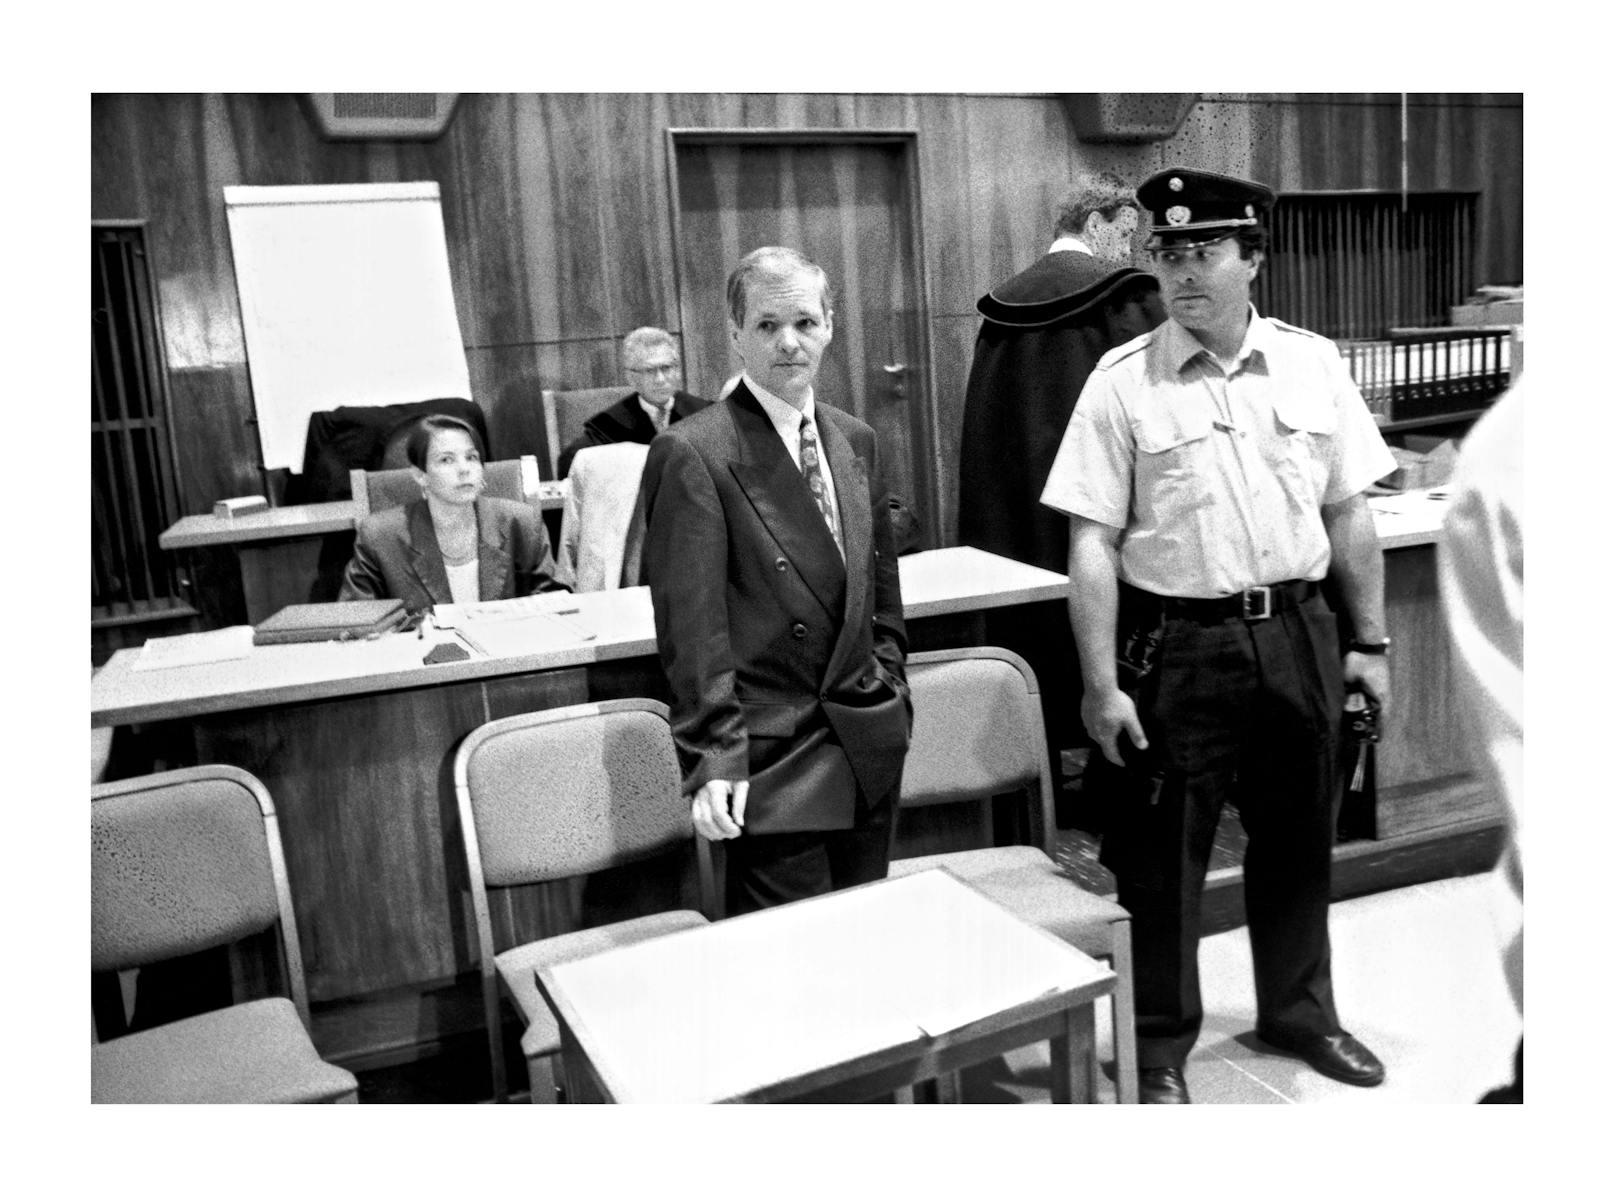 Johann "Jack" Unterweger wurde insgesamt in zehn Mordfällen schuldig gesprochen. Dieses Bild zeigt ihn beim Prozess im April 1994.